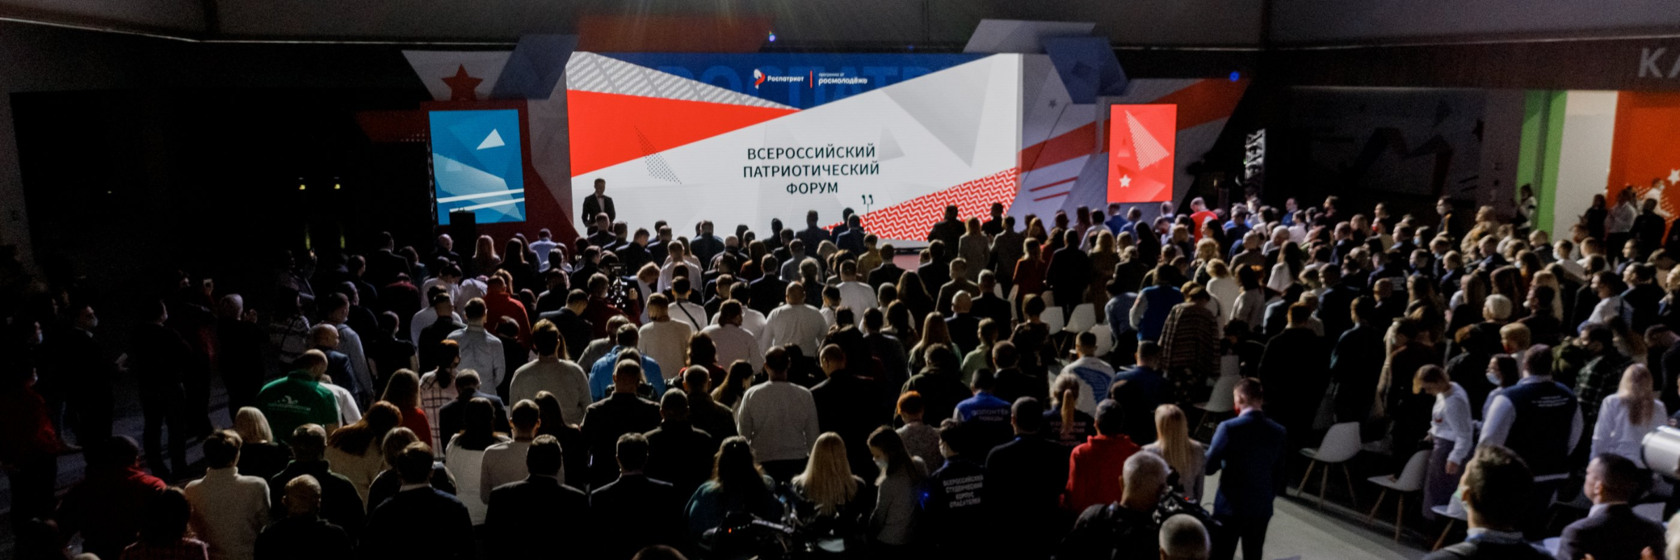 На фото: всероссийский патриотический форум с церемонией вручения Национальной премии «Патриот-2021», организованный при поддержке агентства «Росфорум»